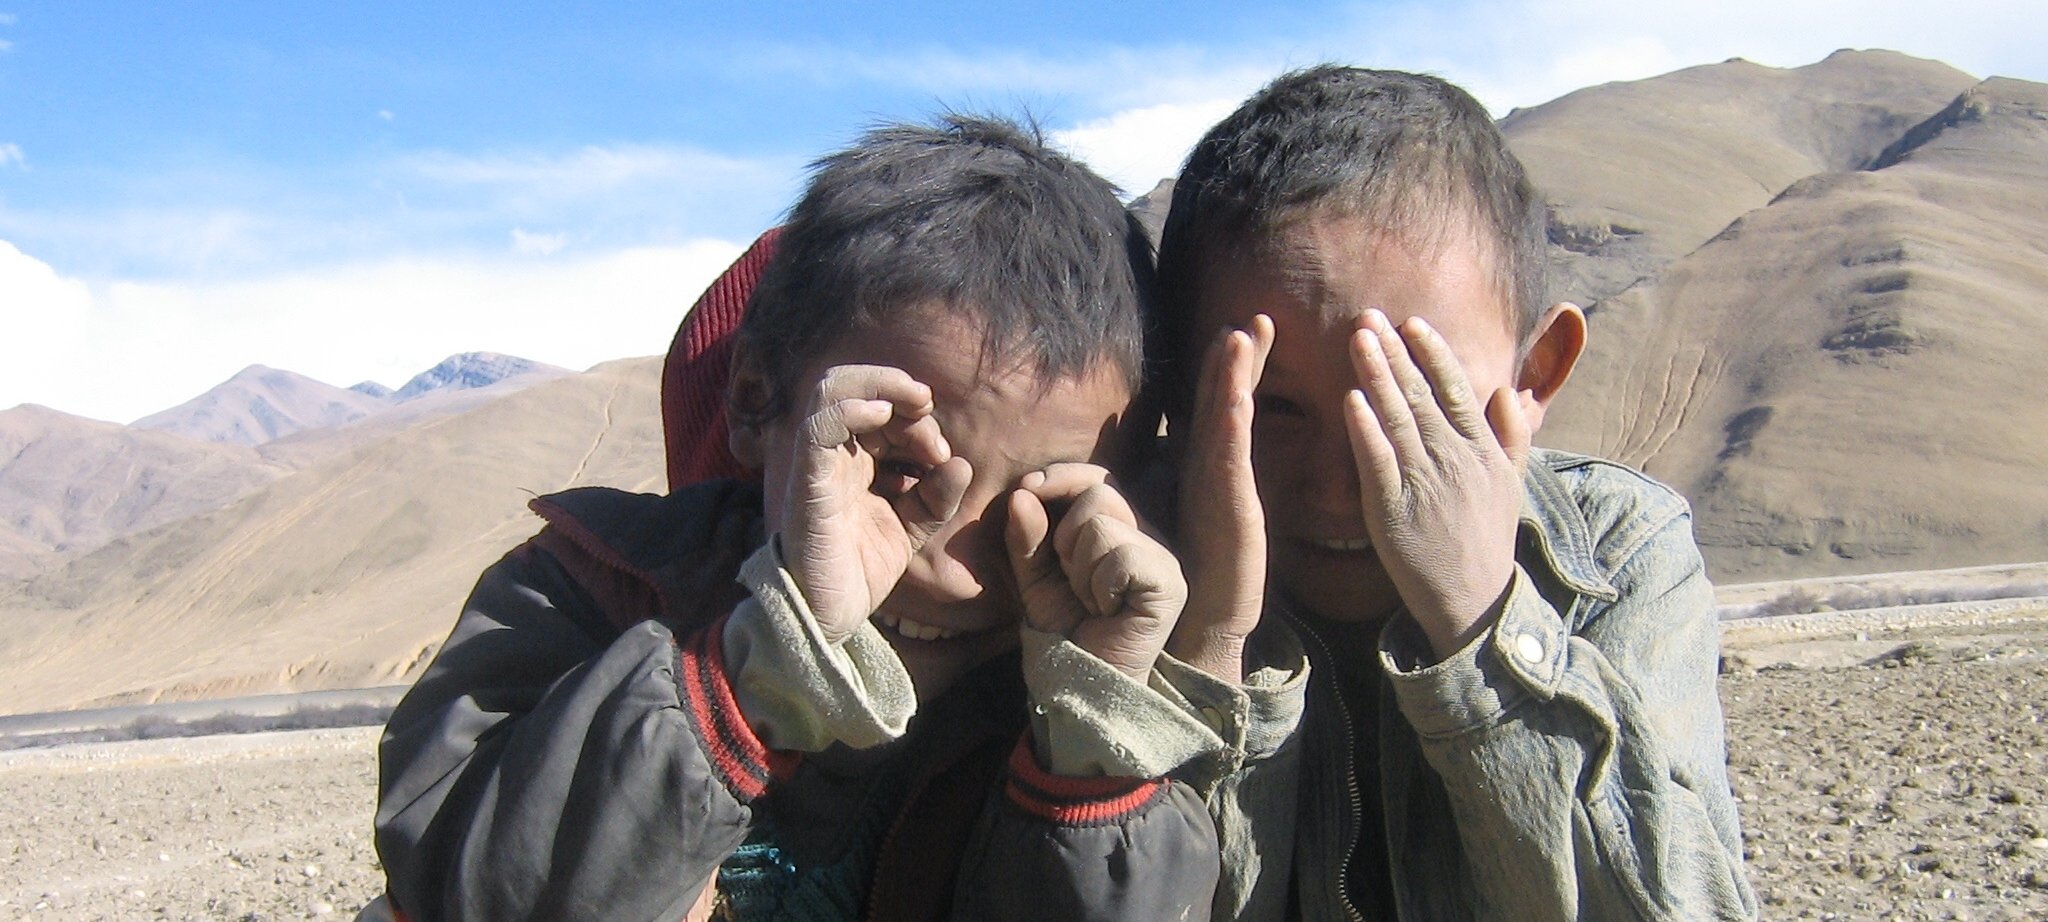 Children of Tibet